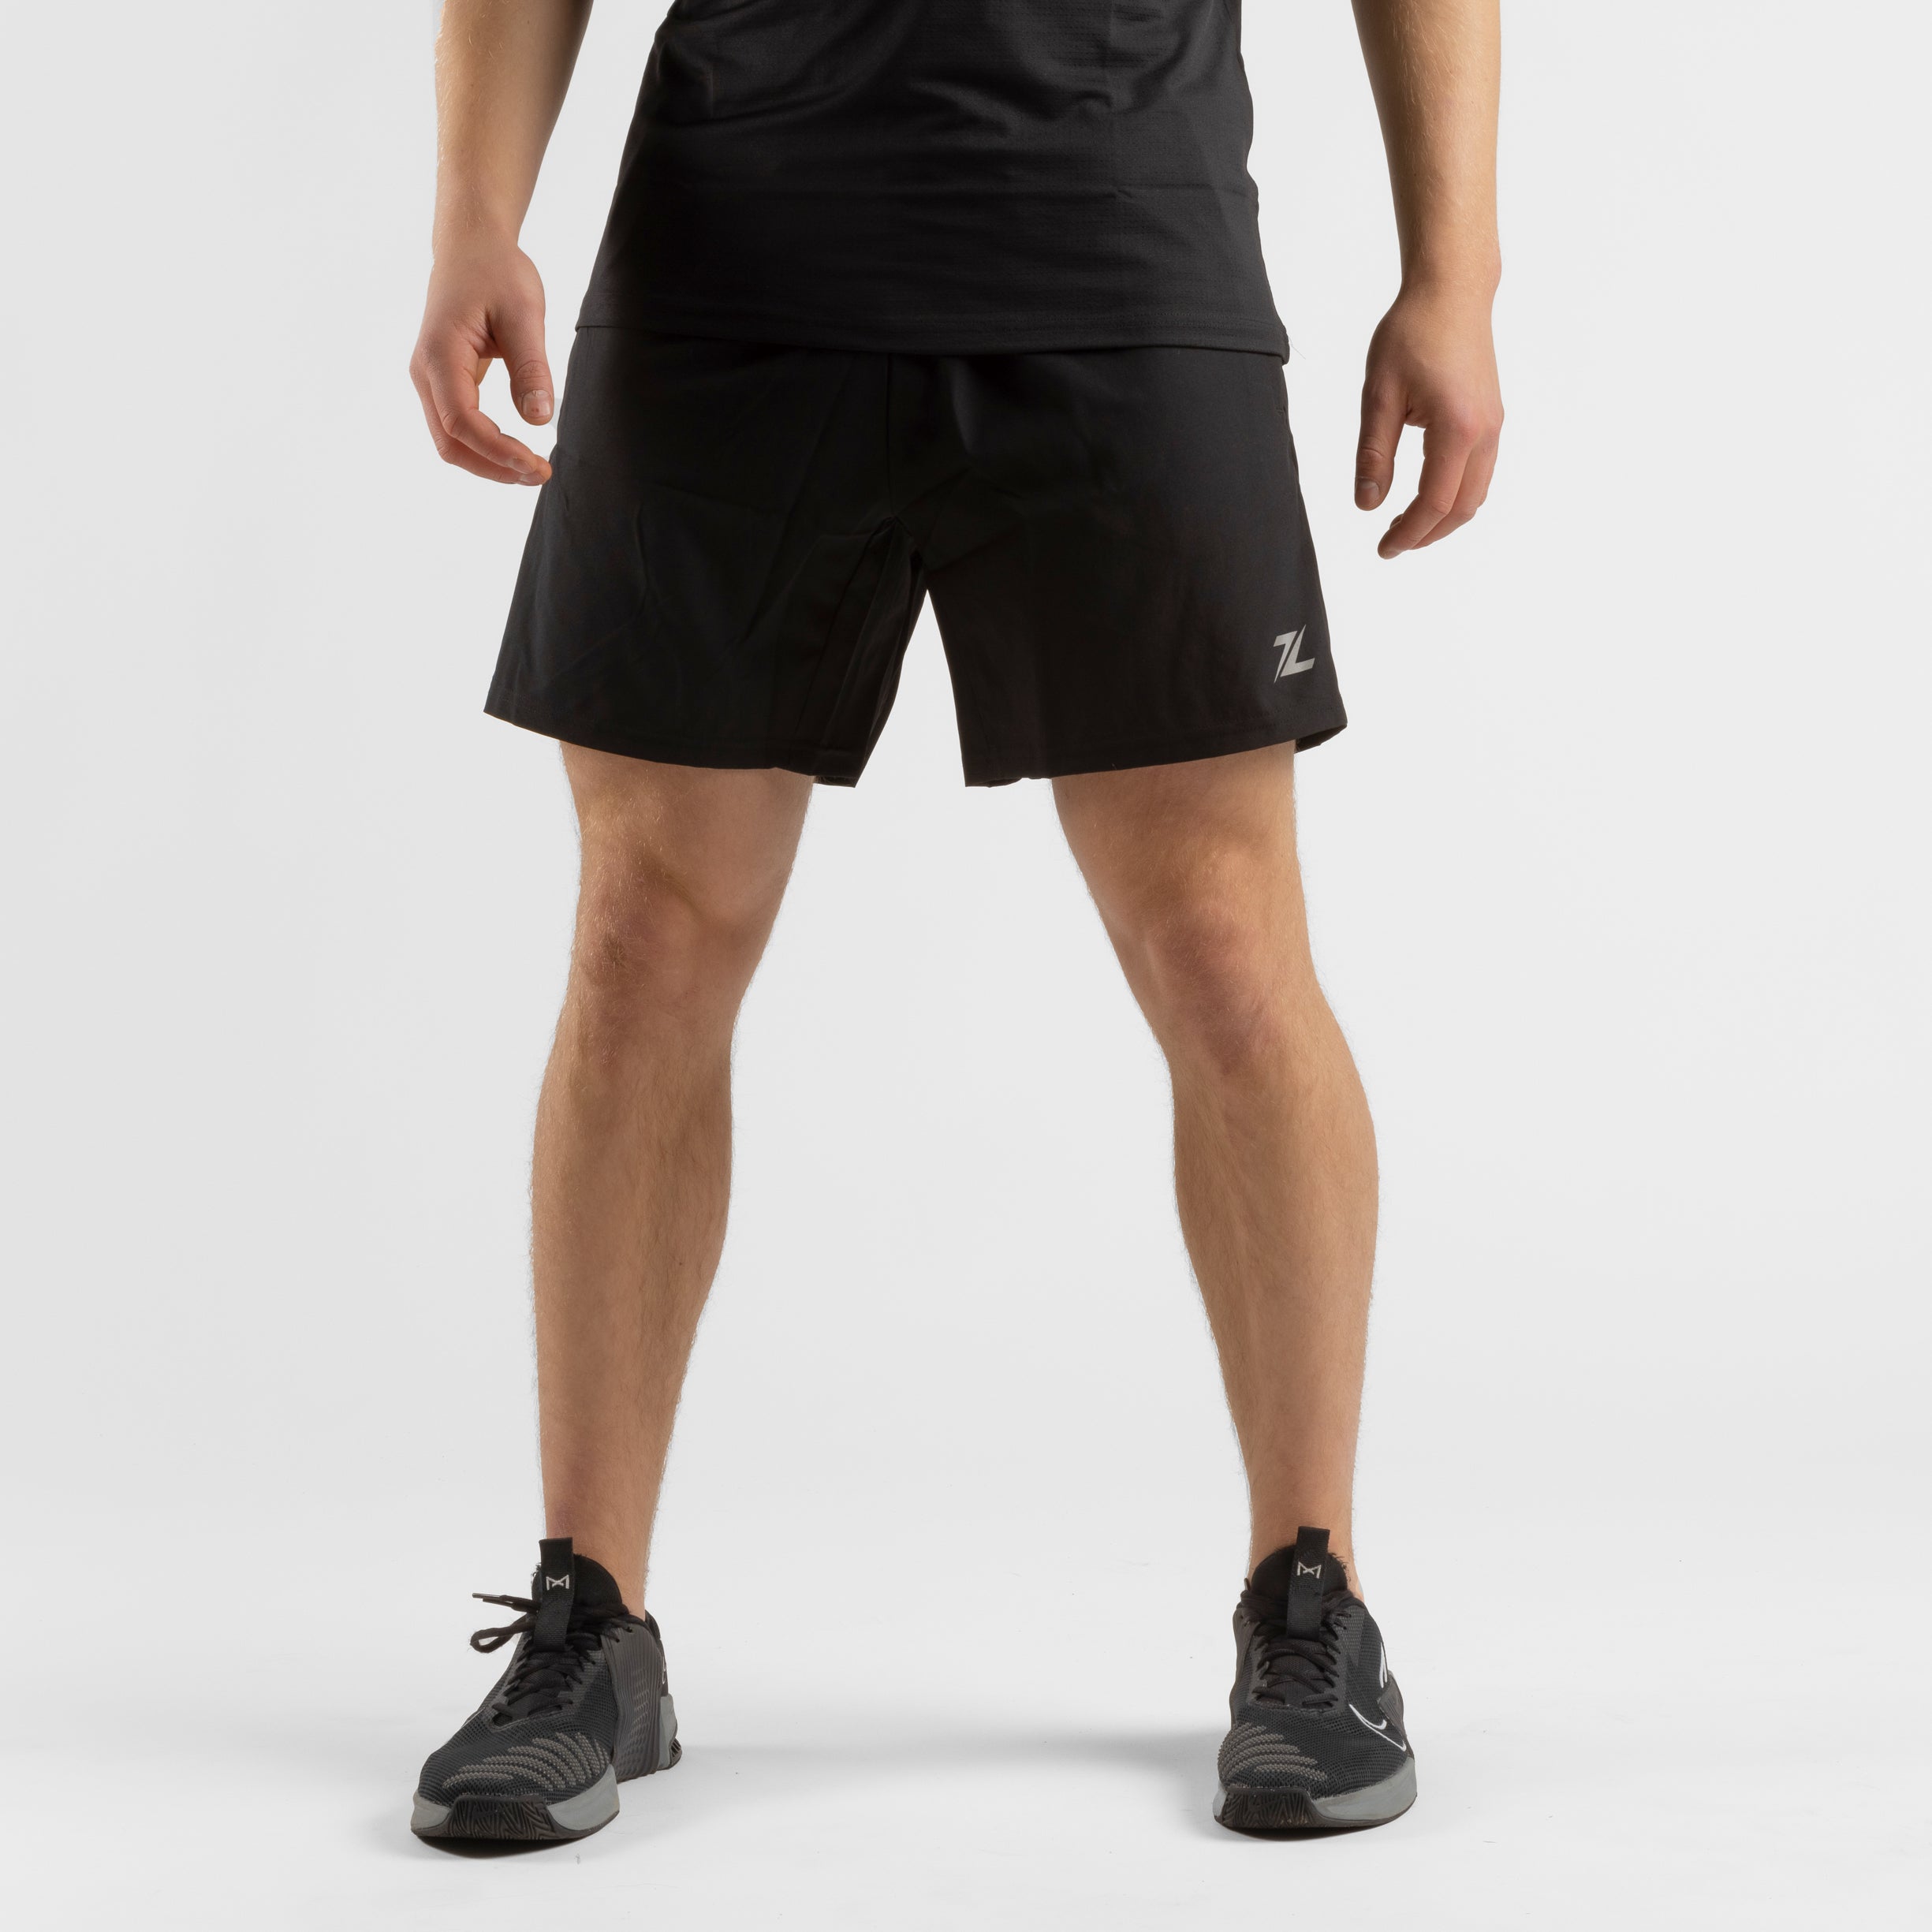 ZEUZ Sport Shorts - Broekje